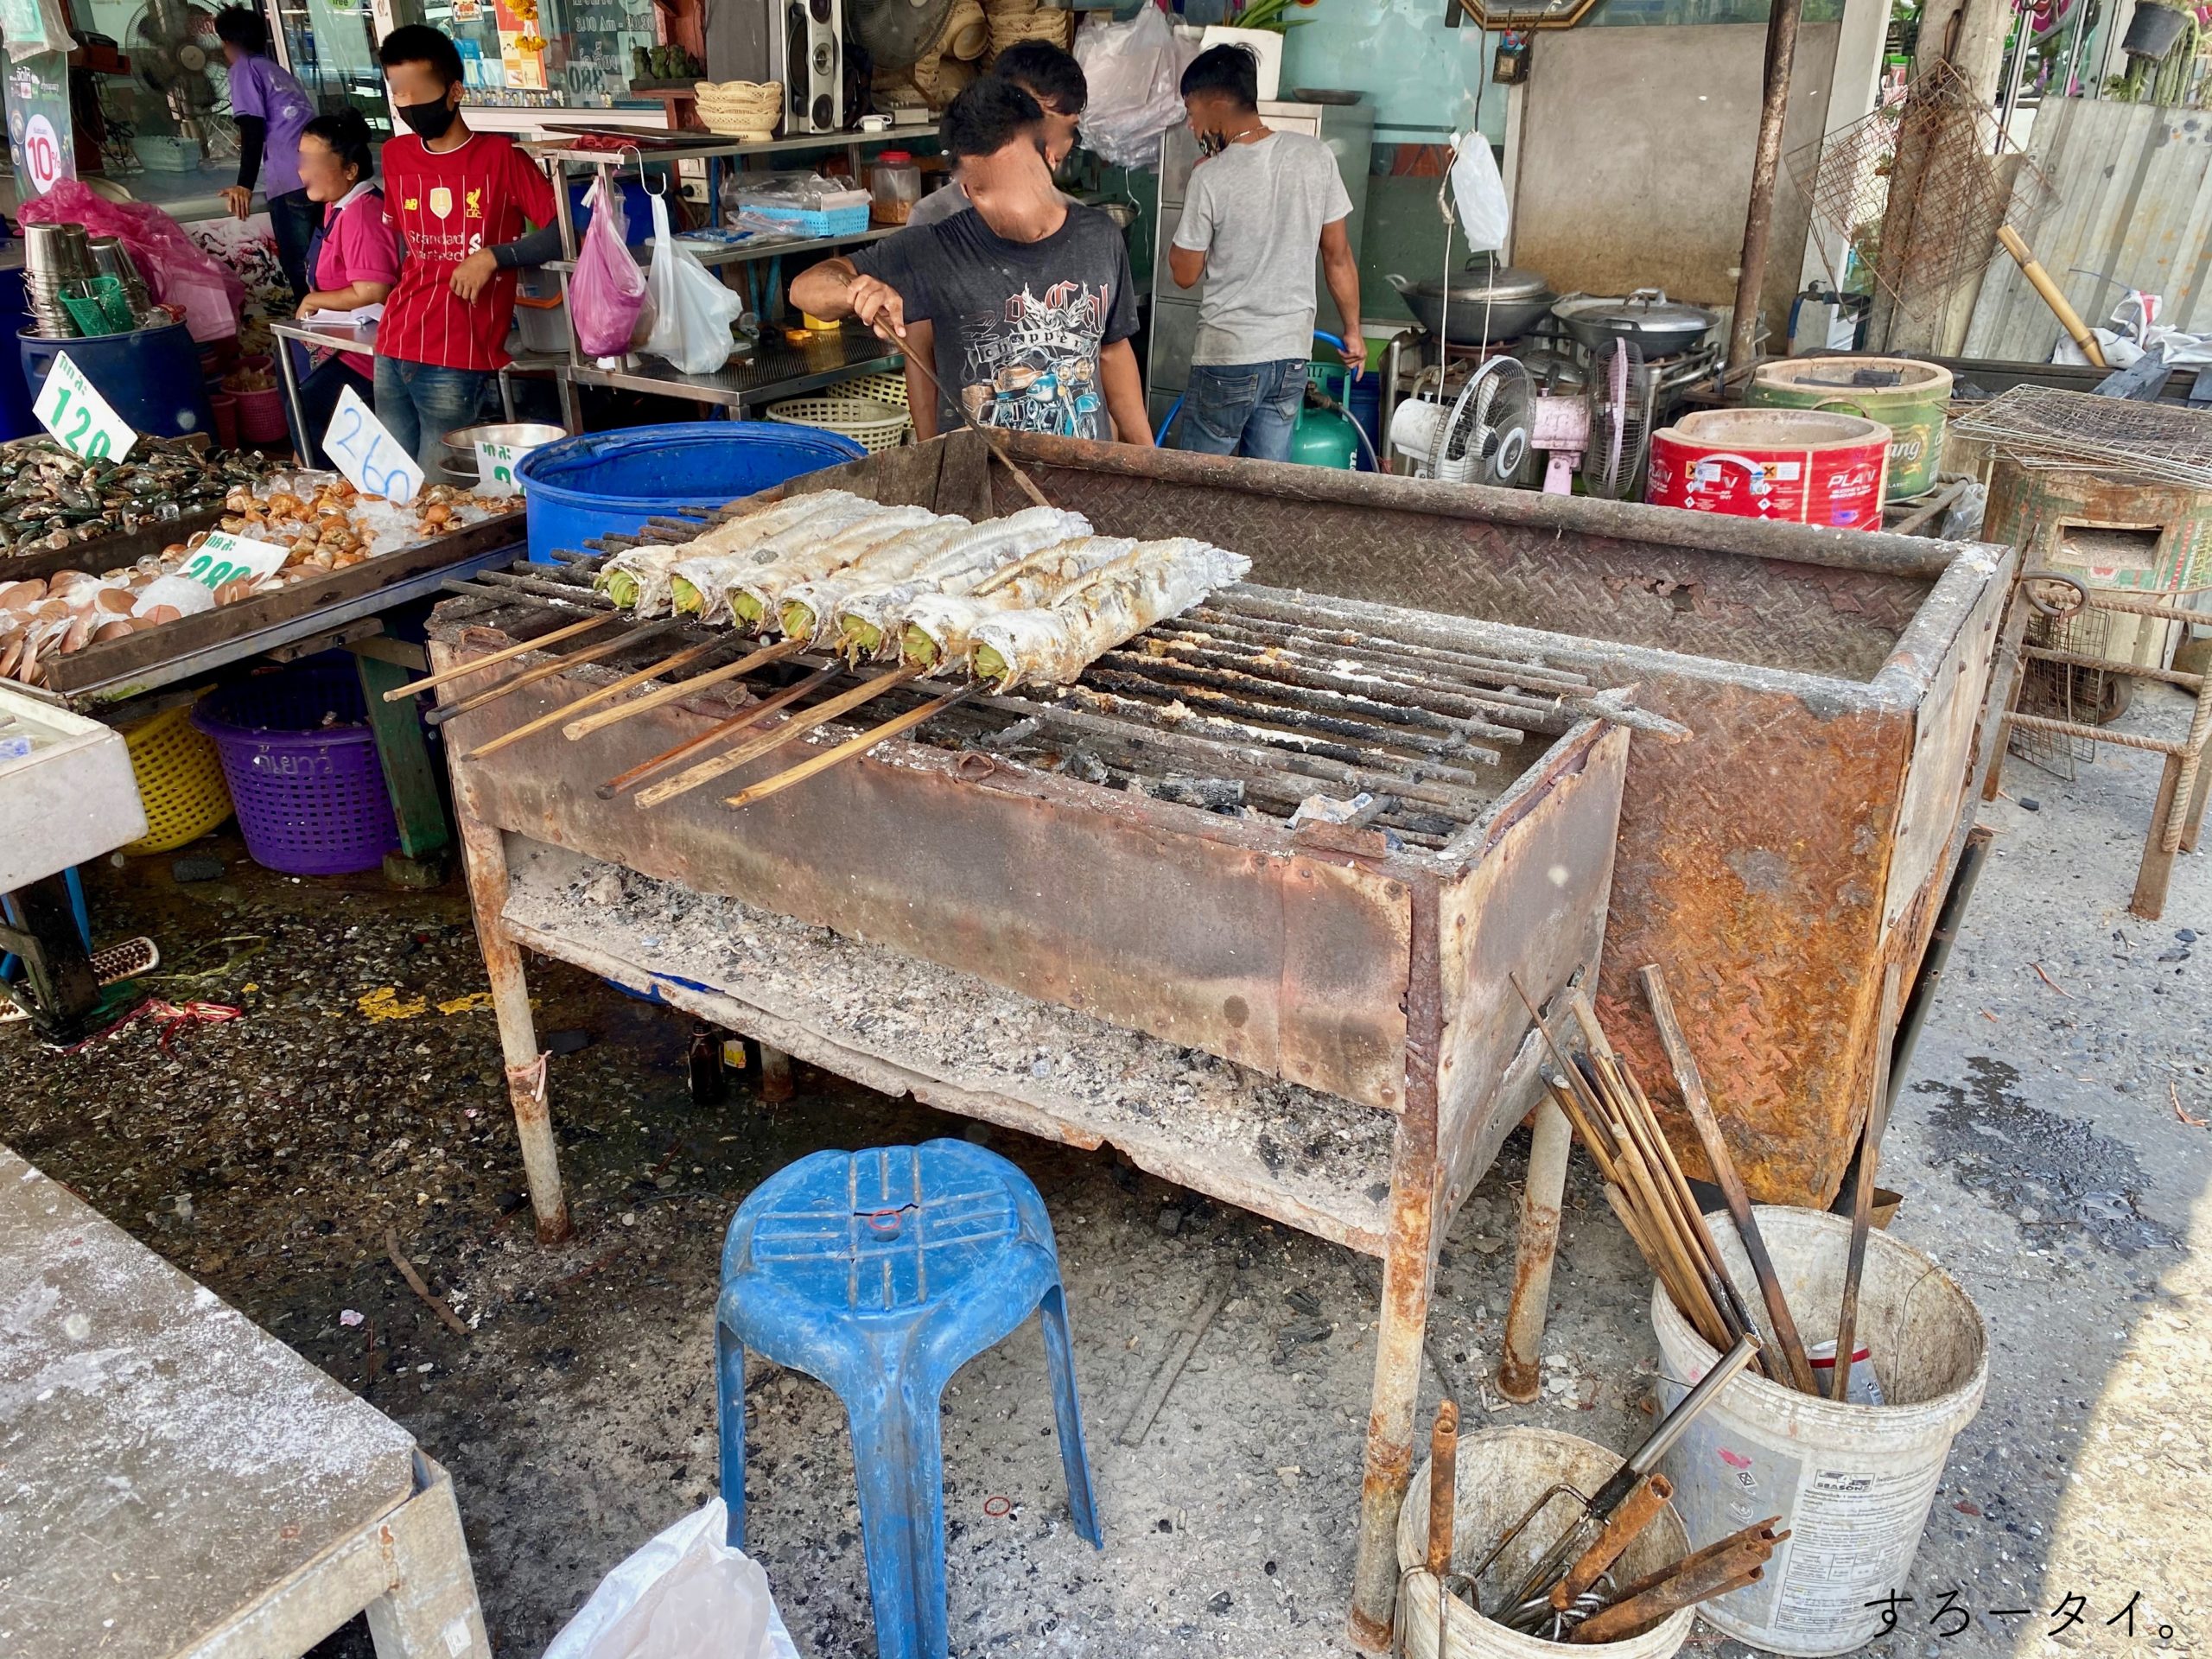 ปลาช่อนเผาเกลือ　Popaokungphao　ป.เป้ากุ้งเผา　ตลาดกลางเพื่อการเกษตร　プラーチョン